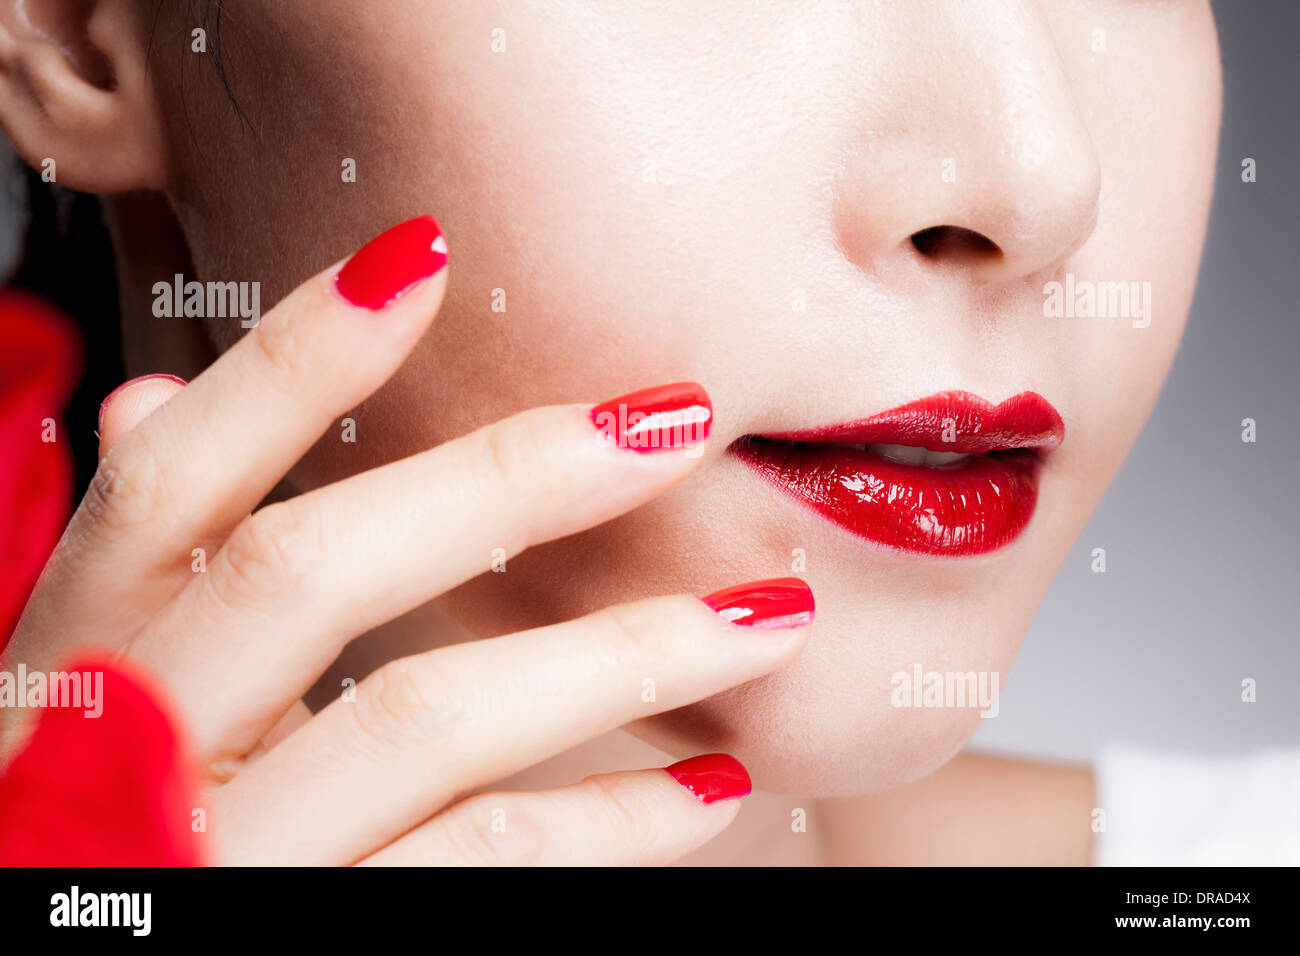 Nahaufnahme Bild von einer Frau rote Nägel auf ein Gesicht mit roten Lippen Stockfoto